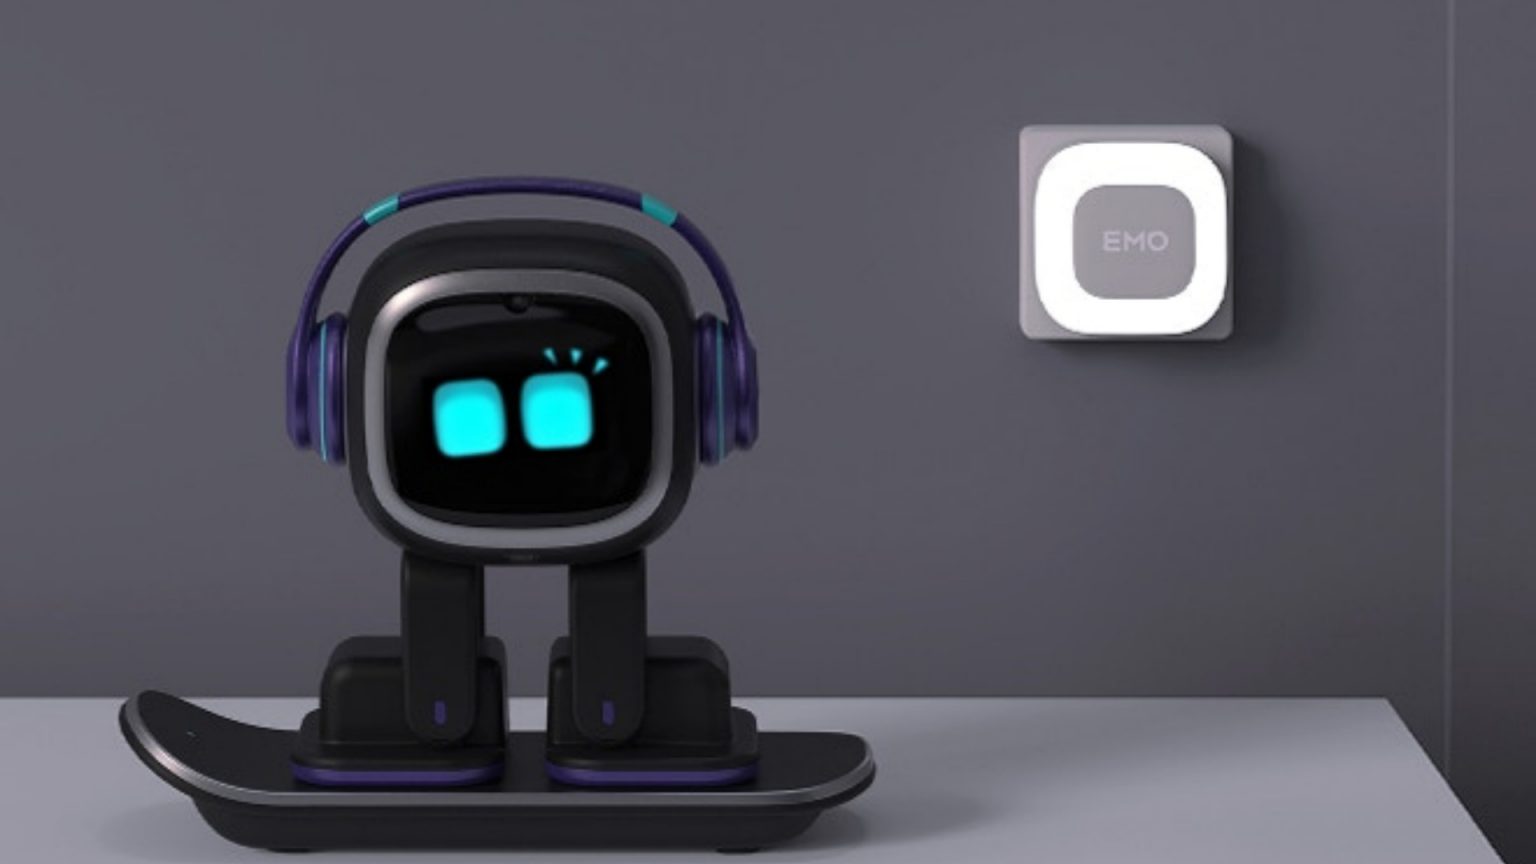 Emo - robot, ktorý vám zlepší náladu a zároveň ponúkne smart home funkcie